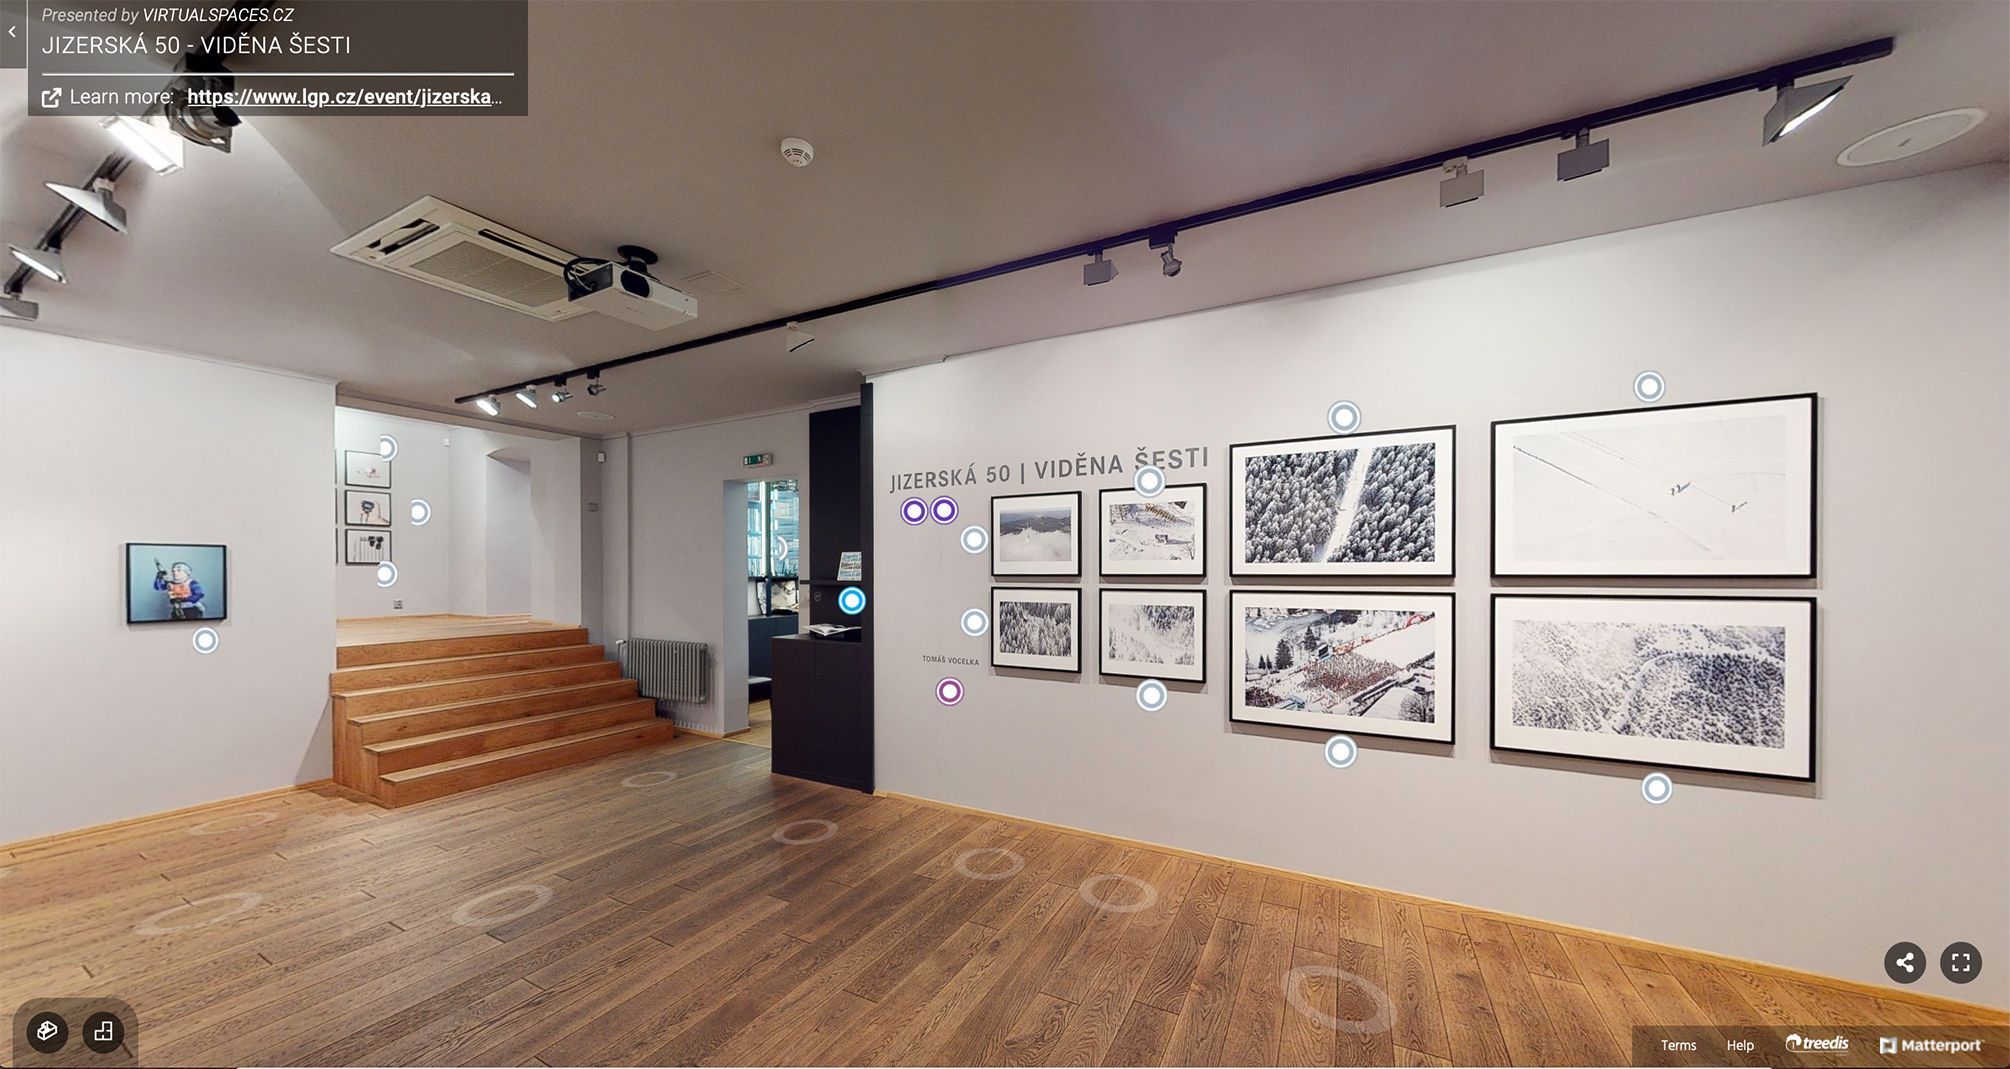 Jizerská 50 | Viděna šesti: snímky z výstavy fotografií v pražské Leica Gallery, leden 2021